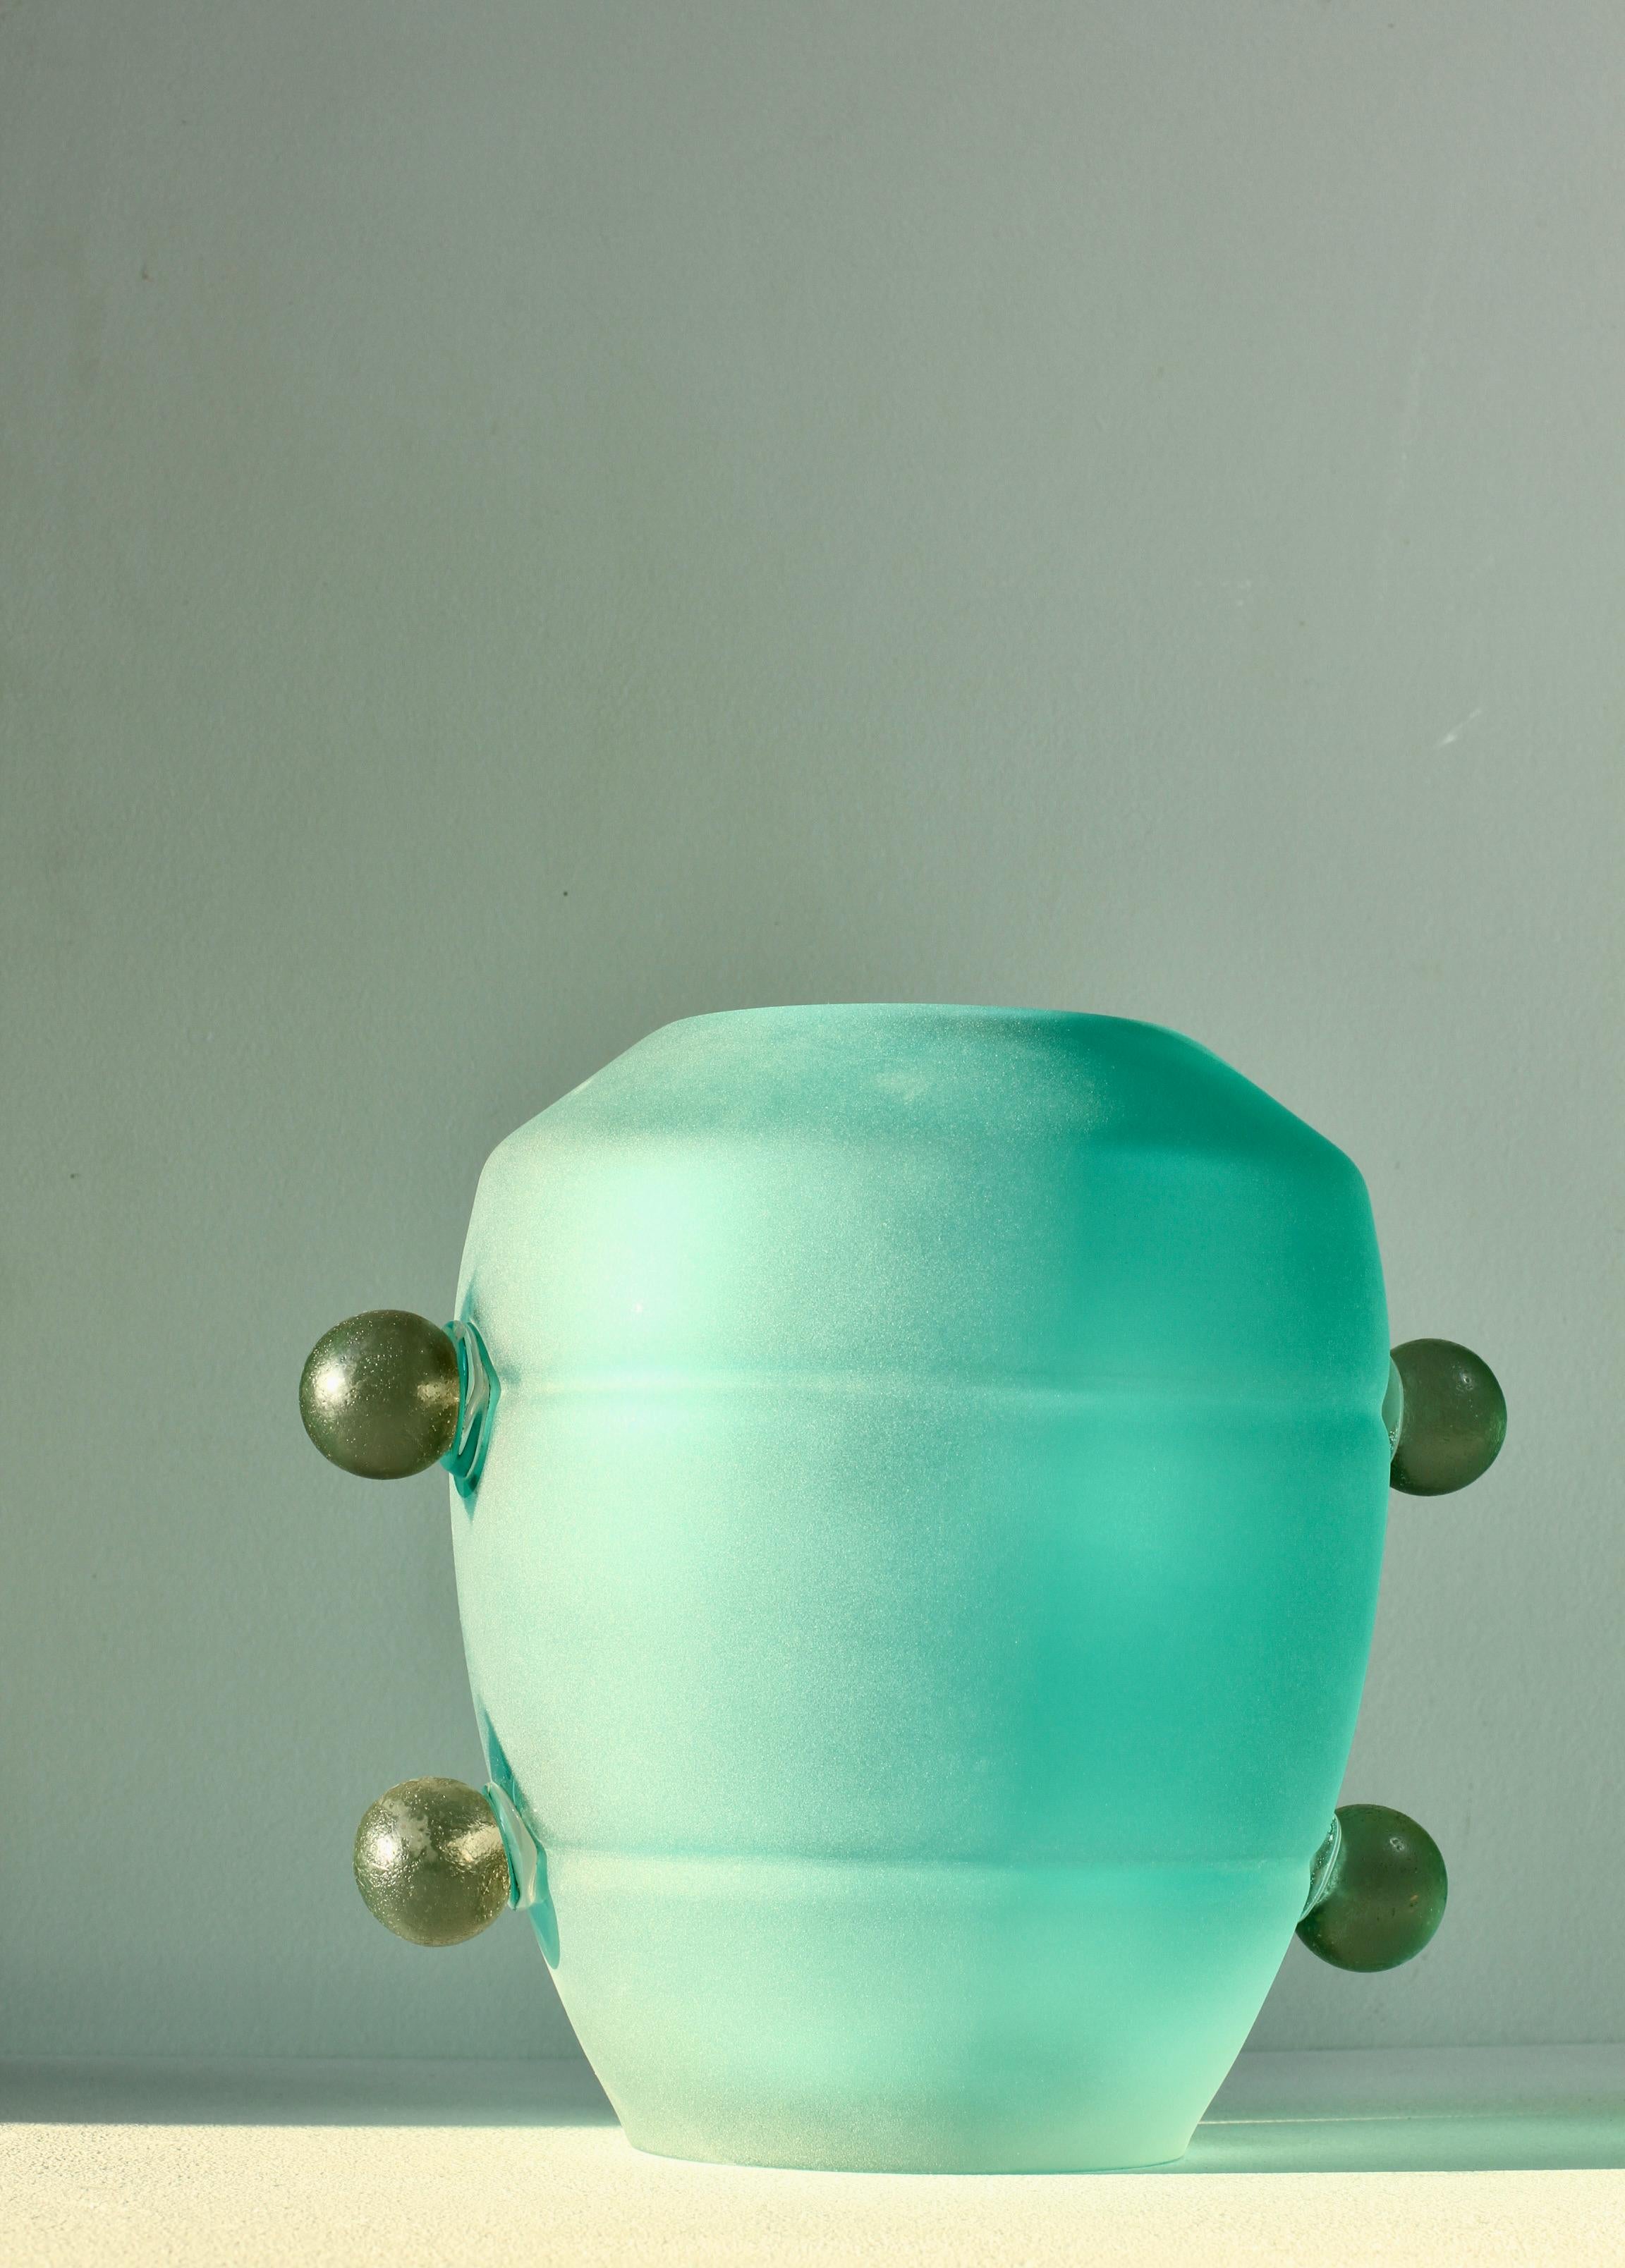 Impresionante y raro jarrón de cristal italiano Seguso, grande y pesado, con textura, de la época moderna de mediados de siglo, de Seguso Vetri d'Arte Murano, Italia, hacia los años 80 / principios de los 90. Elegante en su forma y con un